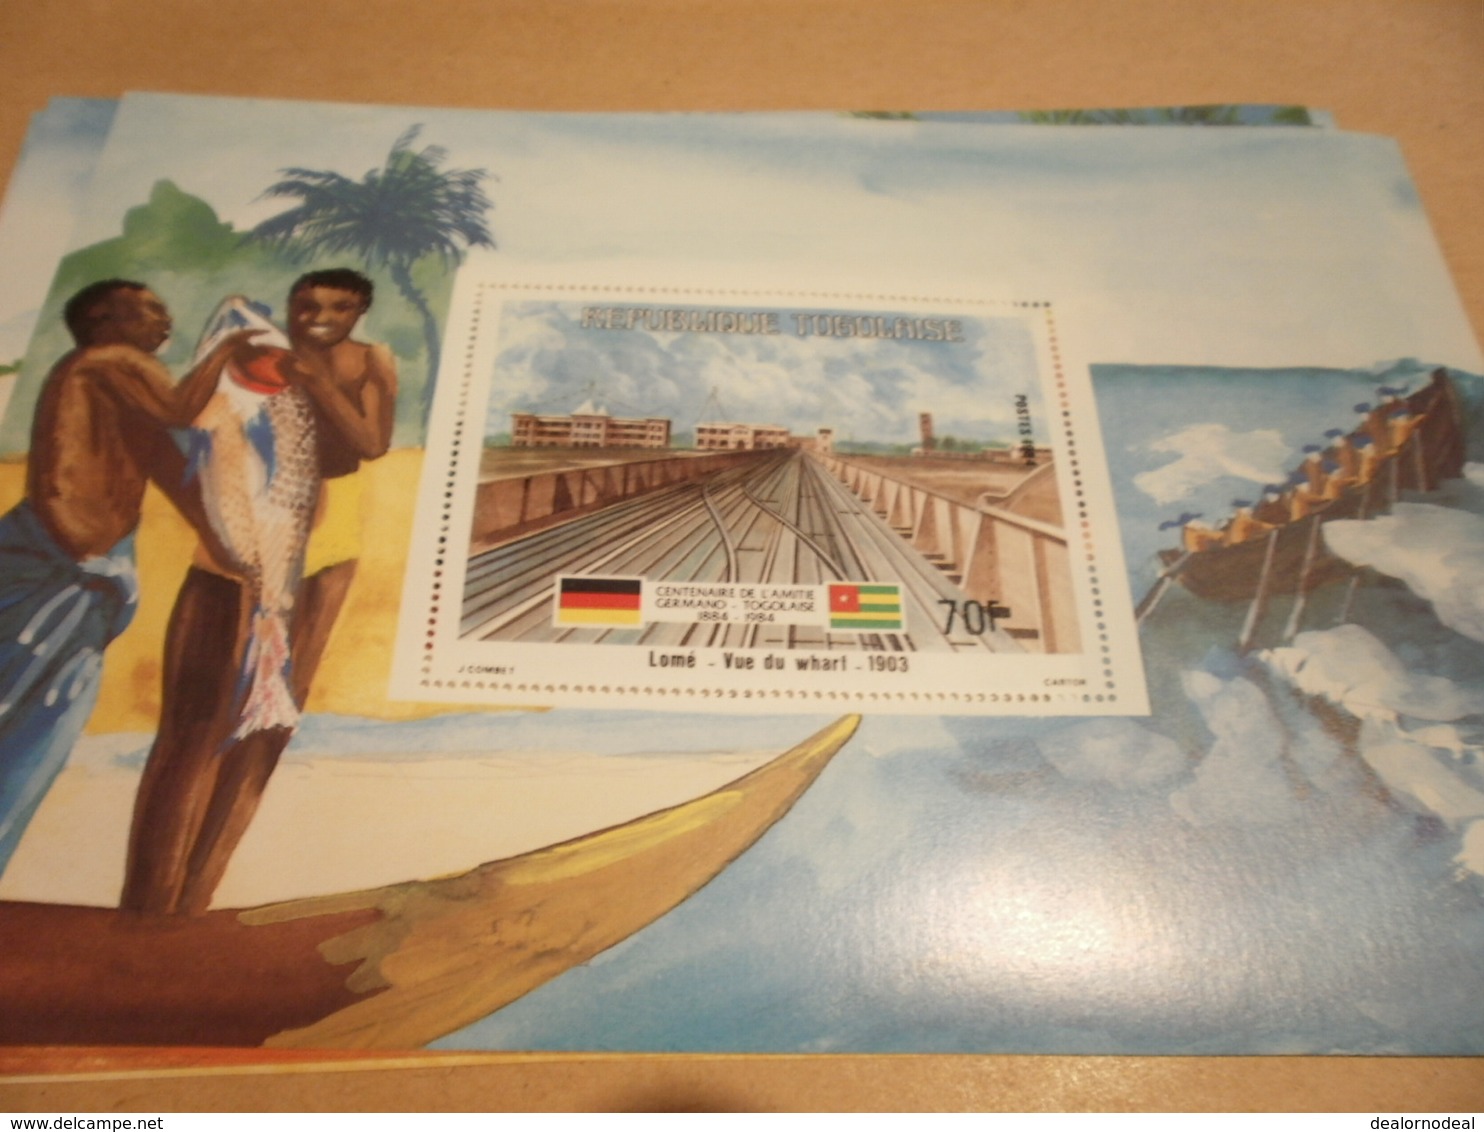 Miniature Sheet 1984 Togolaise Togo Lome Vue Du Wharf 1903 1884 Centenary - Togo (1960-...)